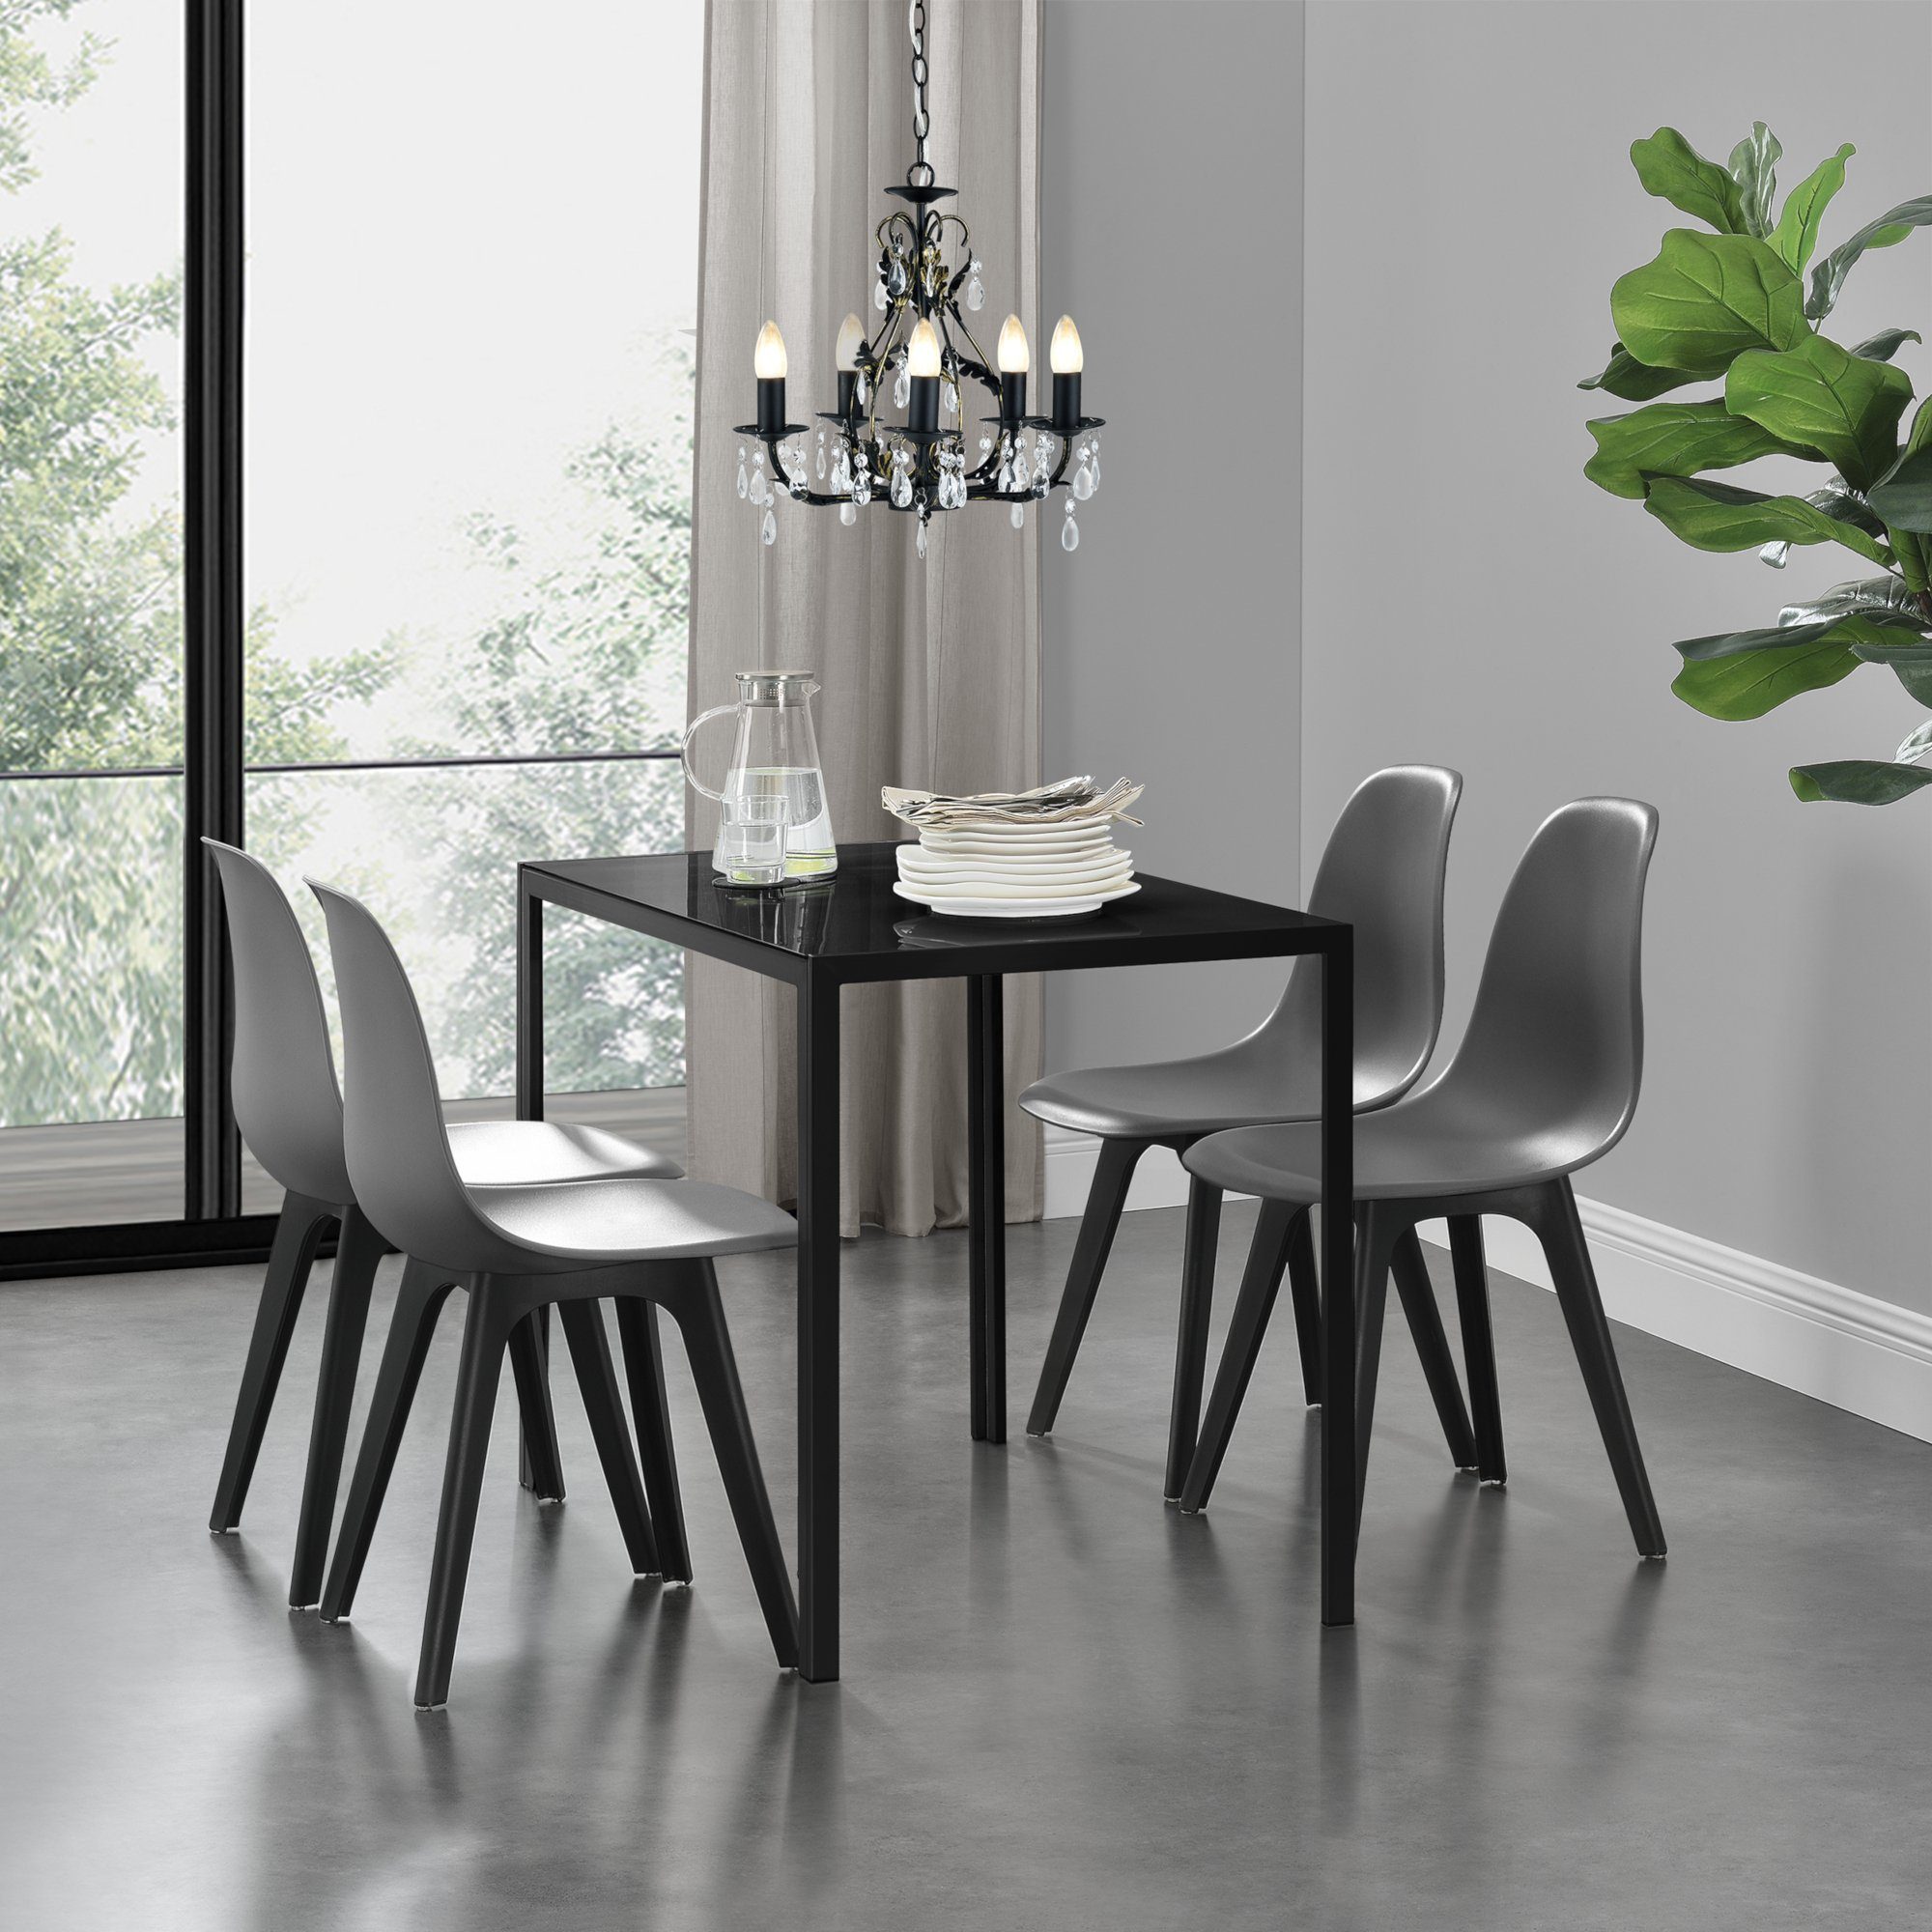 Esstisch 4 Stühle schwarz/weiß Küchentisch Esszimmertisch Glas Tisch 